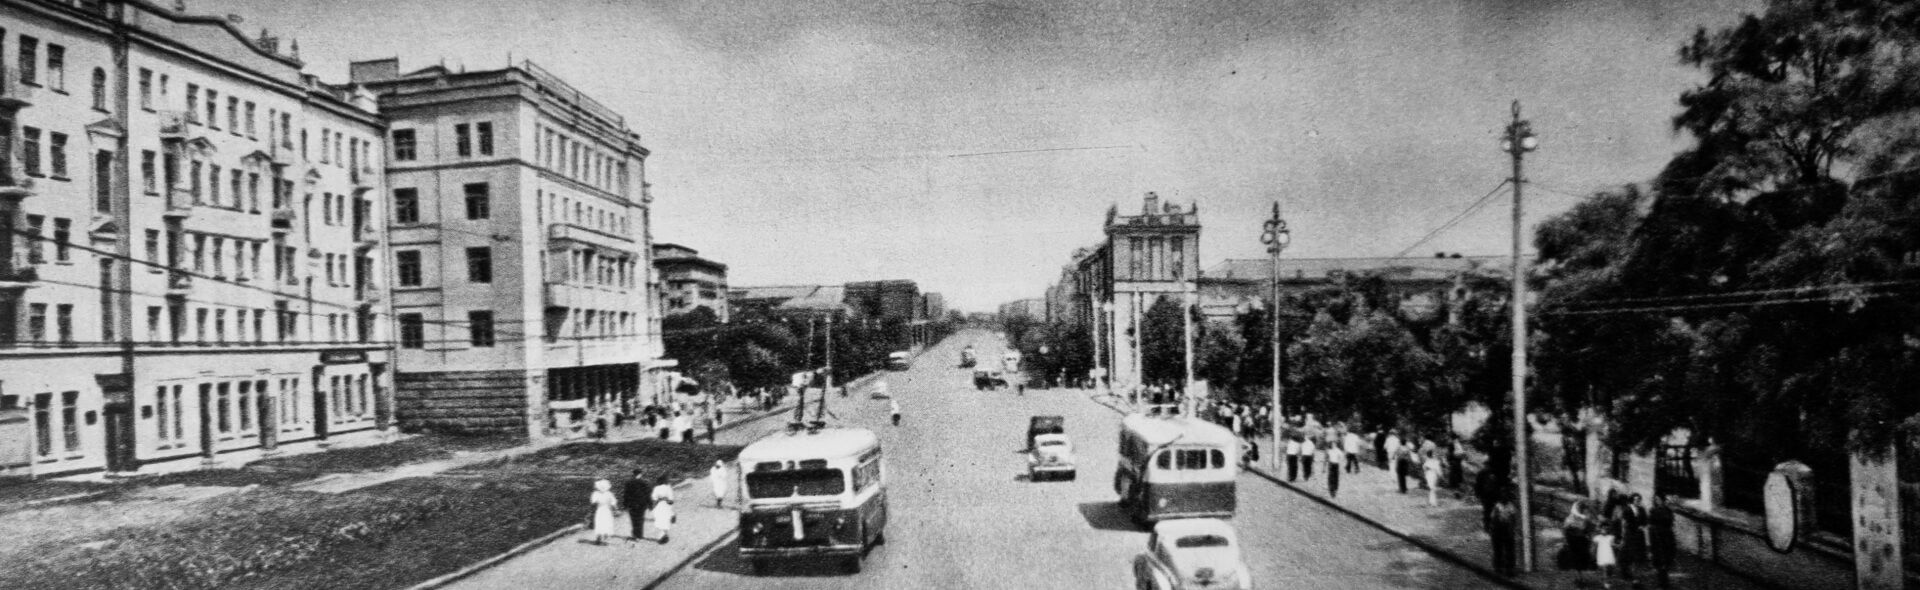 Ulica w Stalinie, lata 50. XX wieku